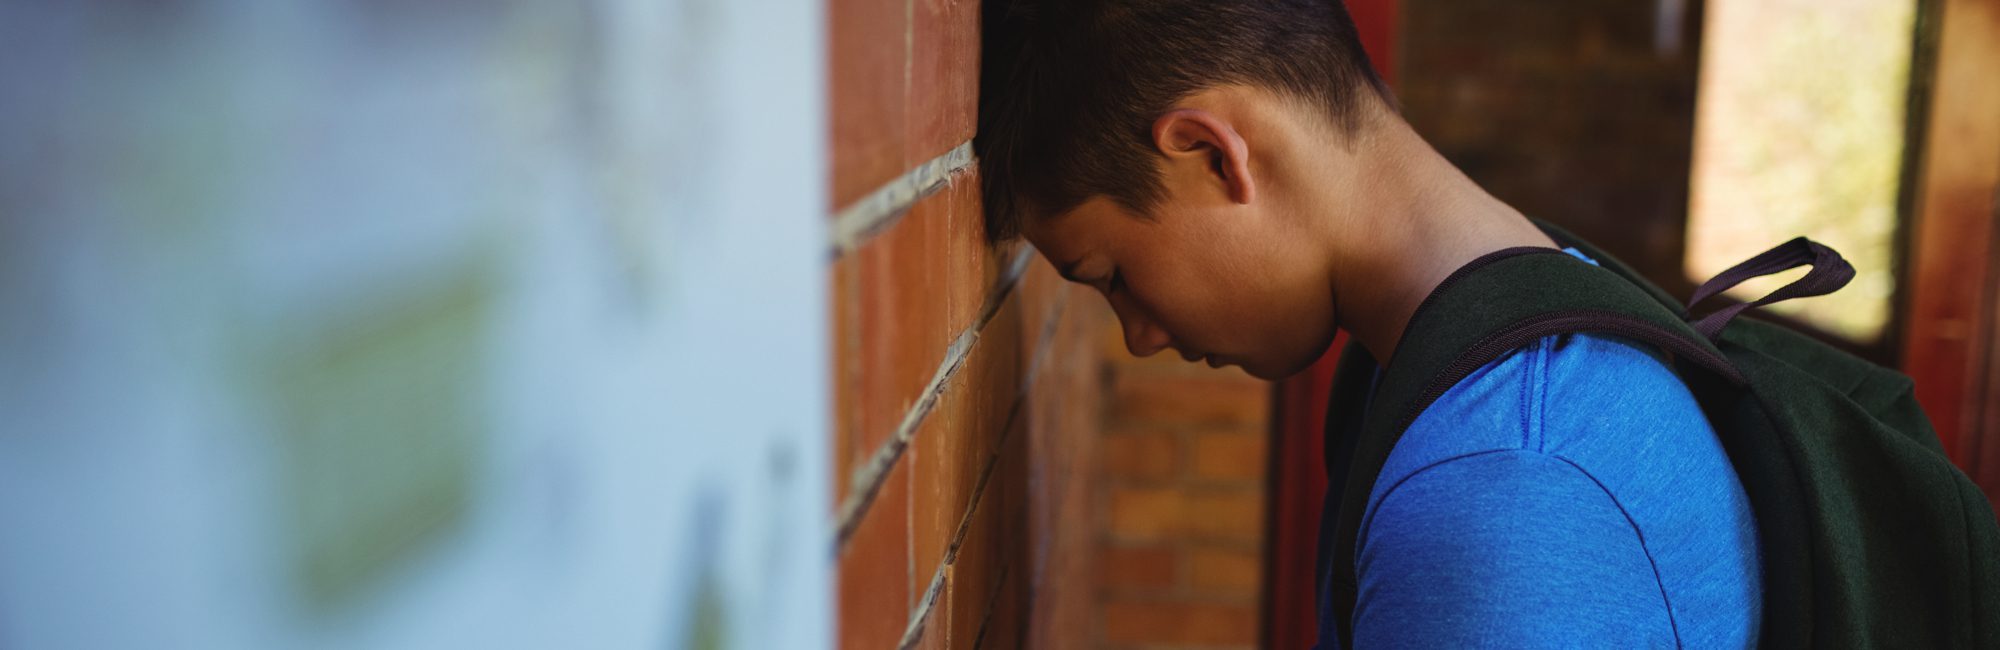 sad schoolboy leaning on brick wall